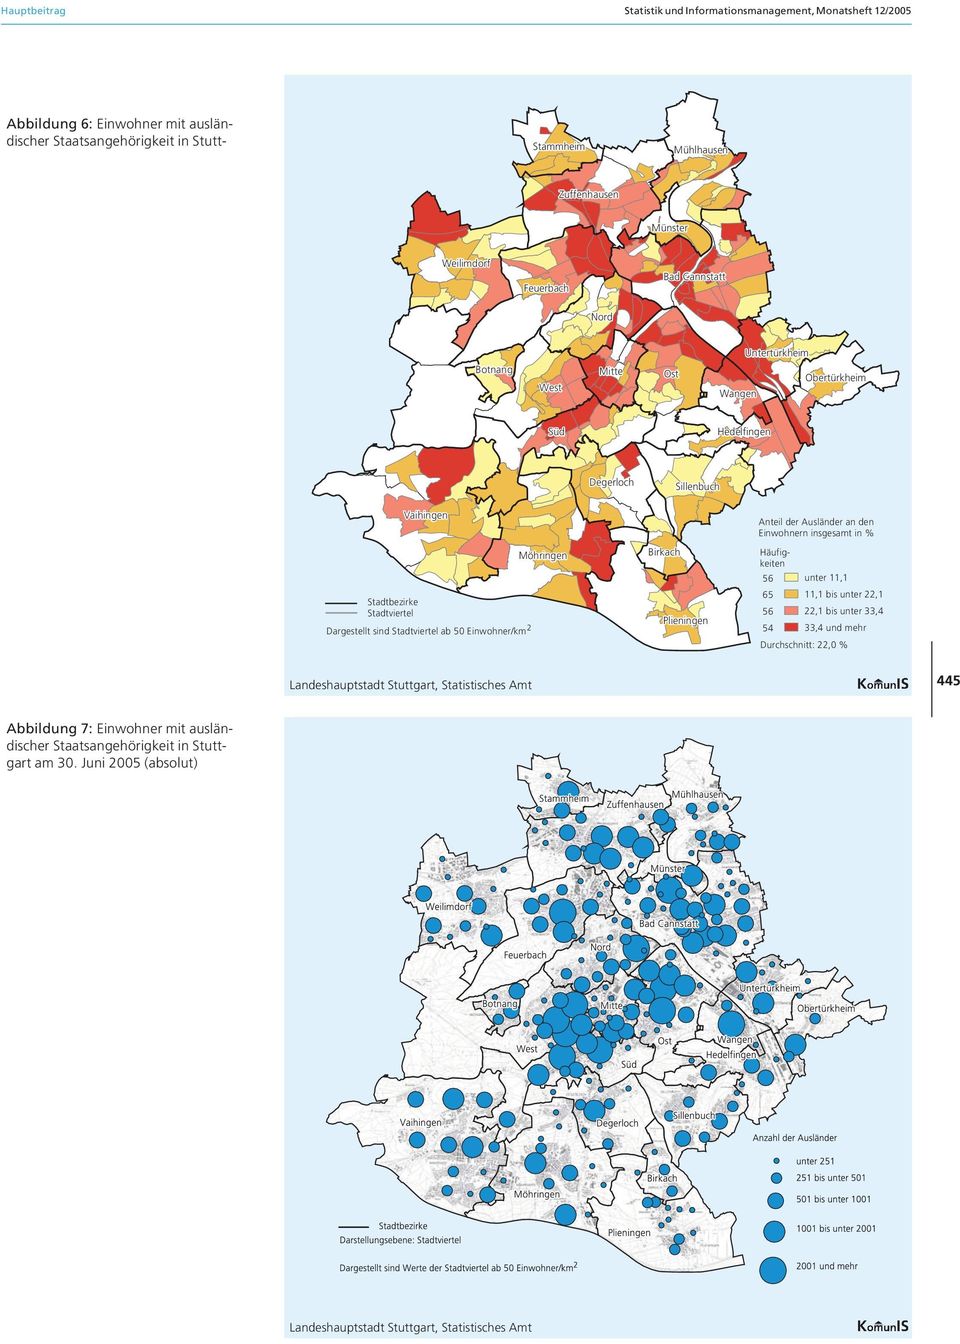 Stadtviertel ab 50 Einwohner/km 2 Möhringen Birkach Plieningen Anteil der Ausländer an den Einwohnern insgesamt in % Häufigkeiten 56 65 56 54 unter 11,1 11,1